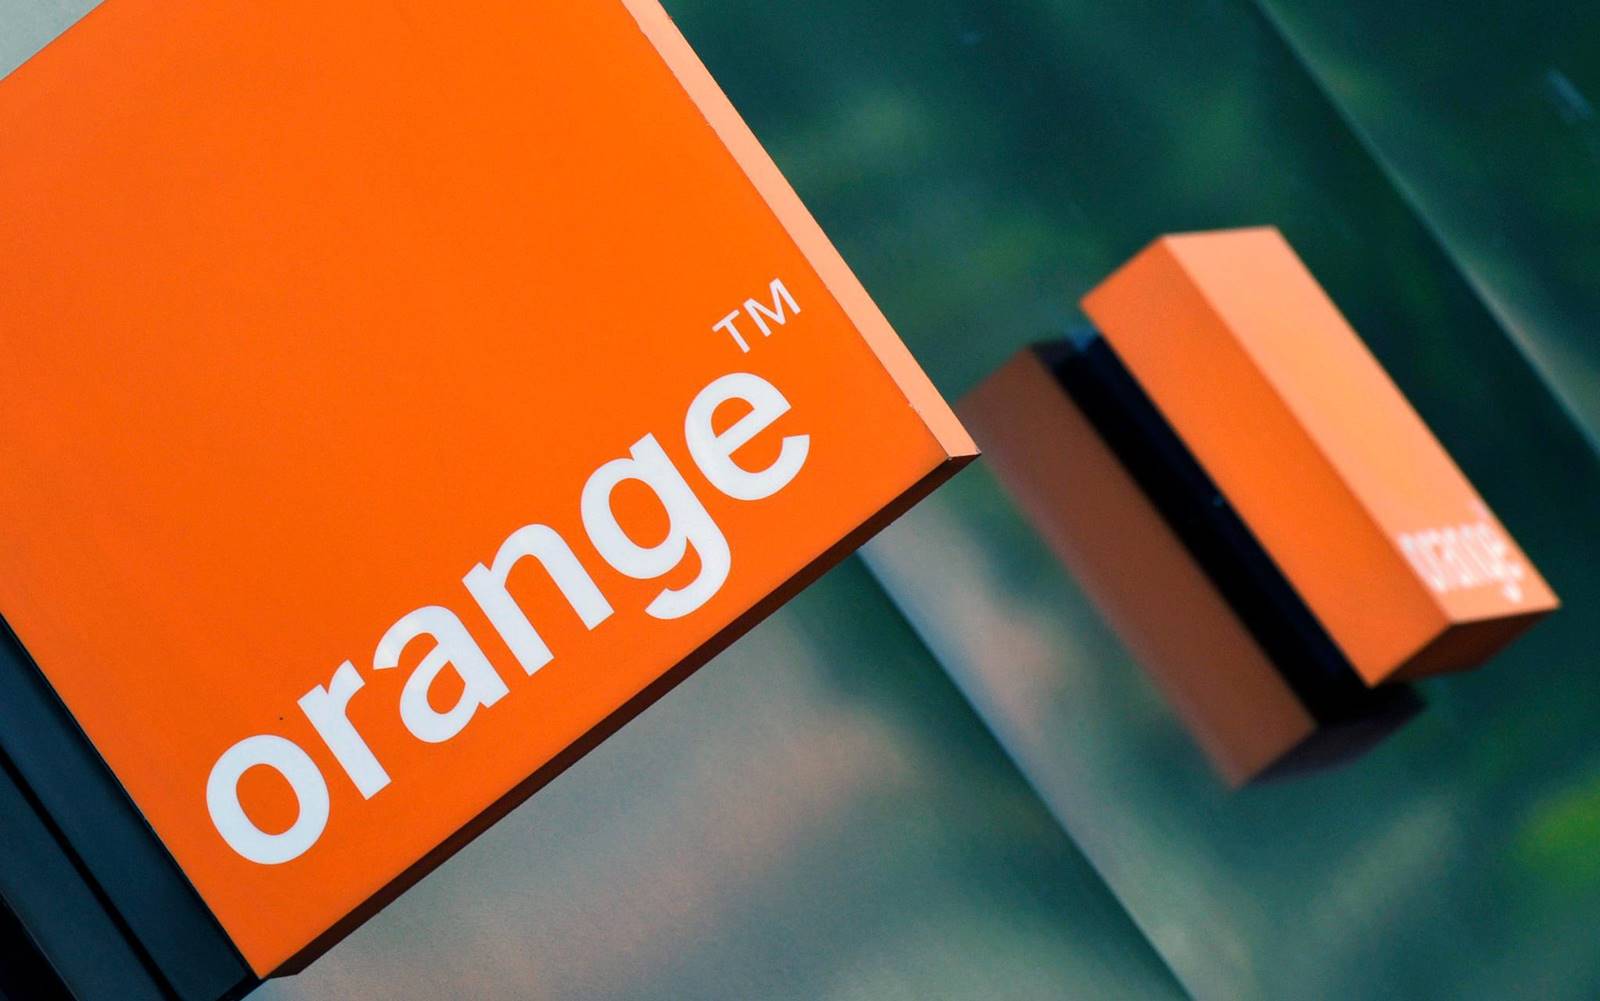 Orange Roumanie surprend le week-end avec d'excellentes promotions 376779